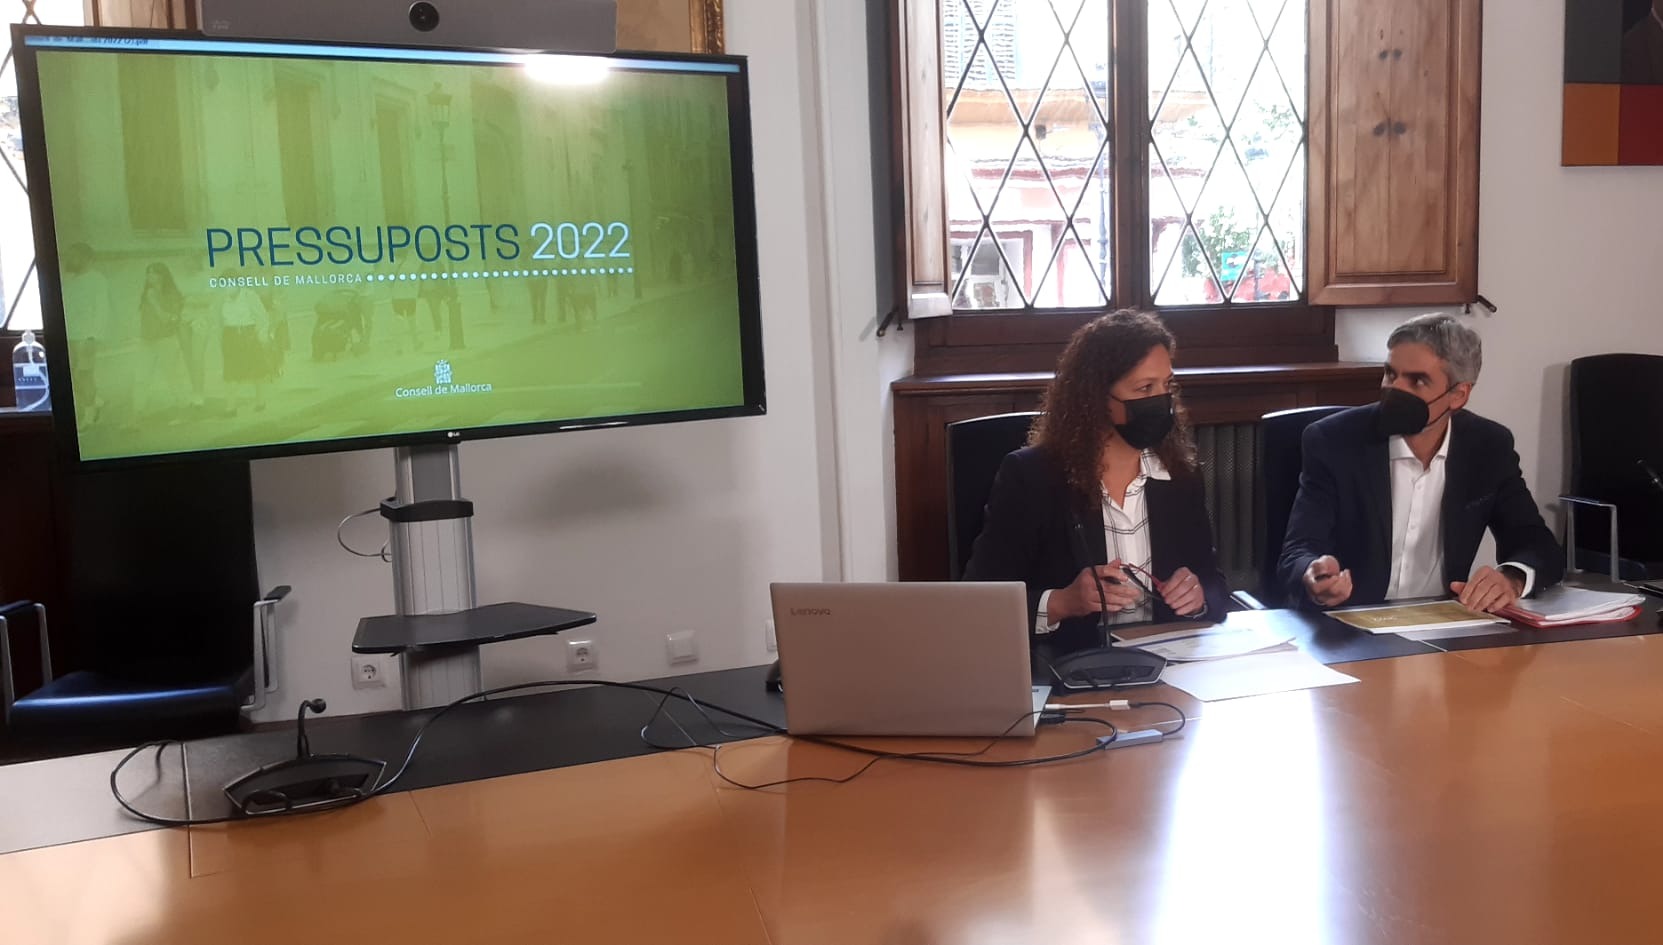 Presentació pressuposts 2022 Consell de Mallorca